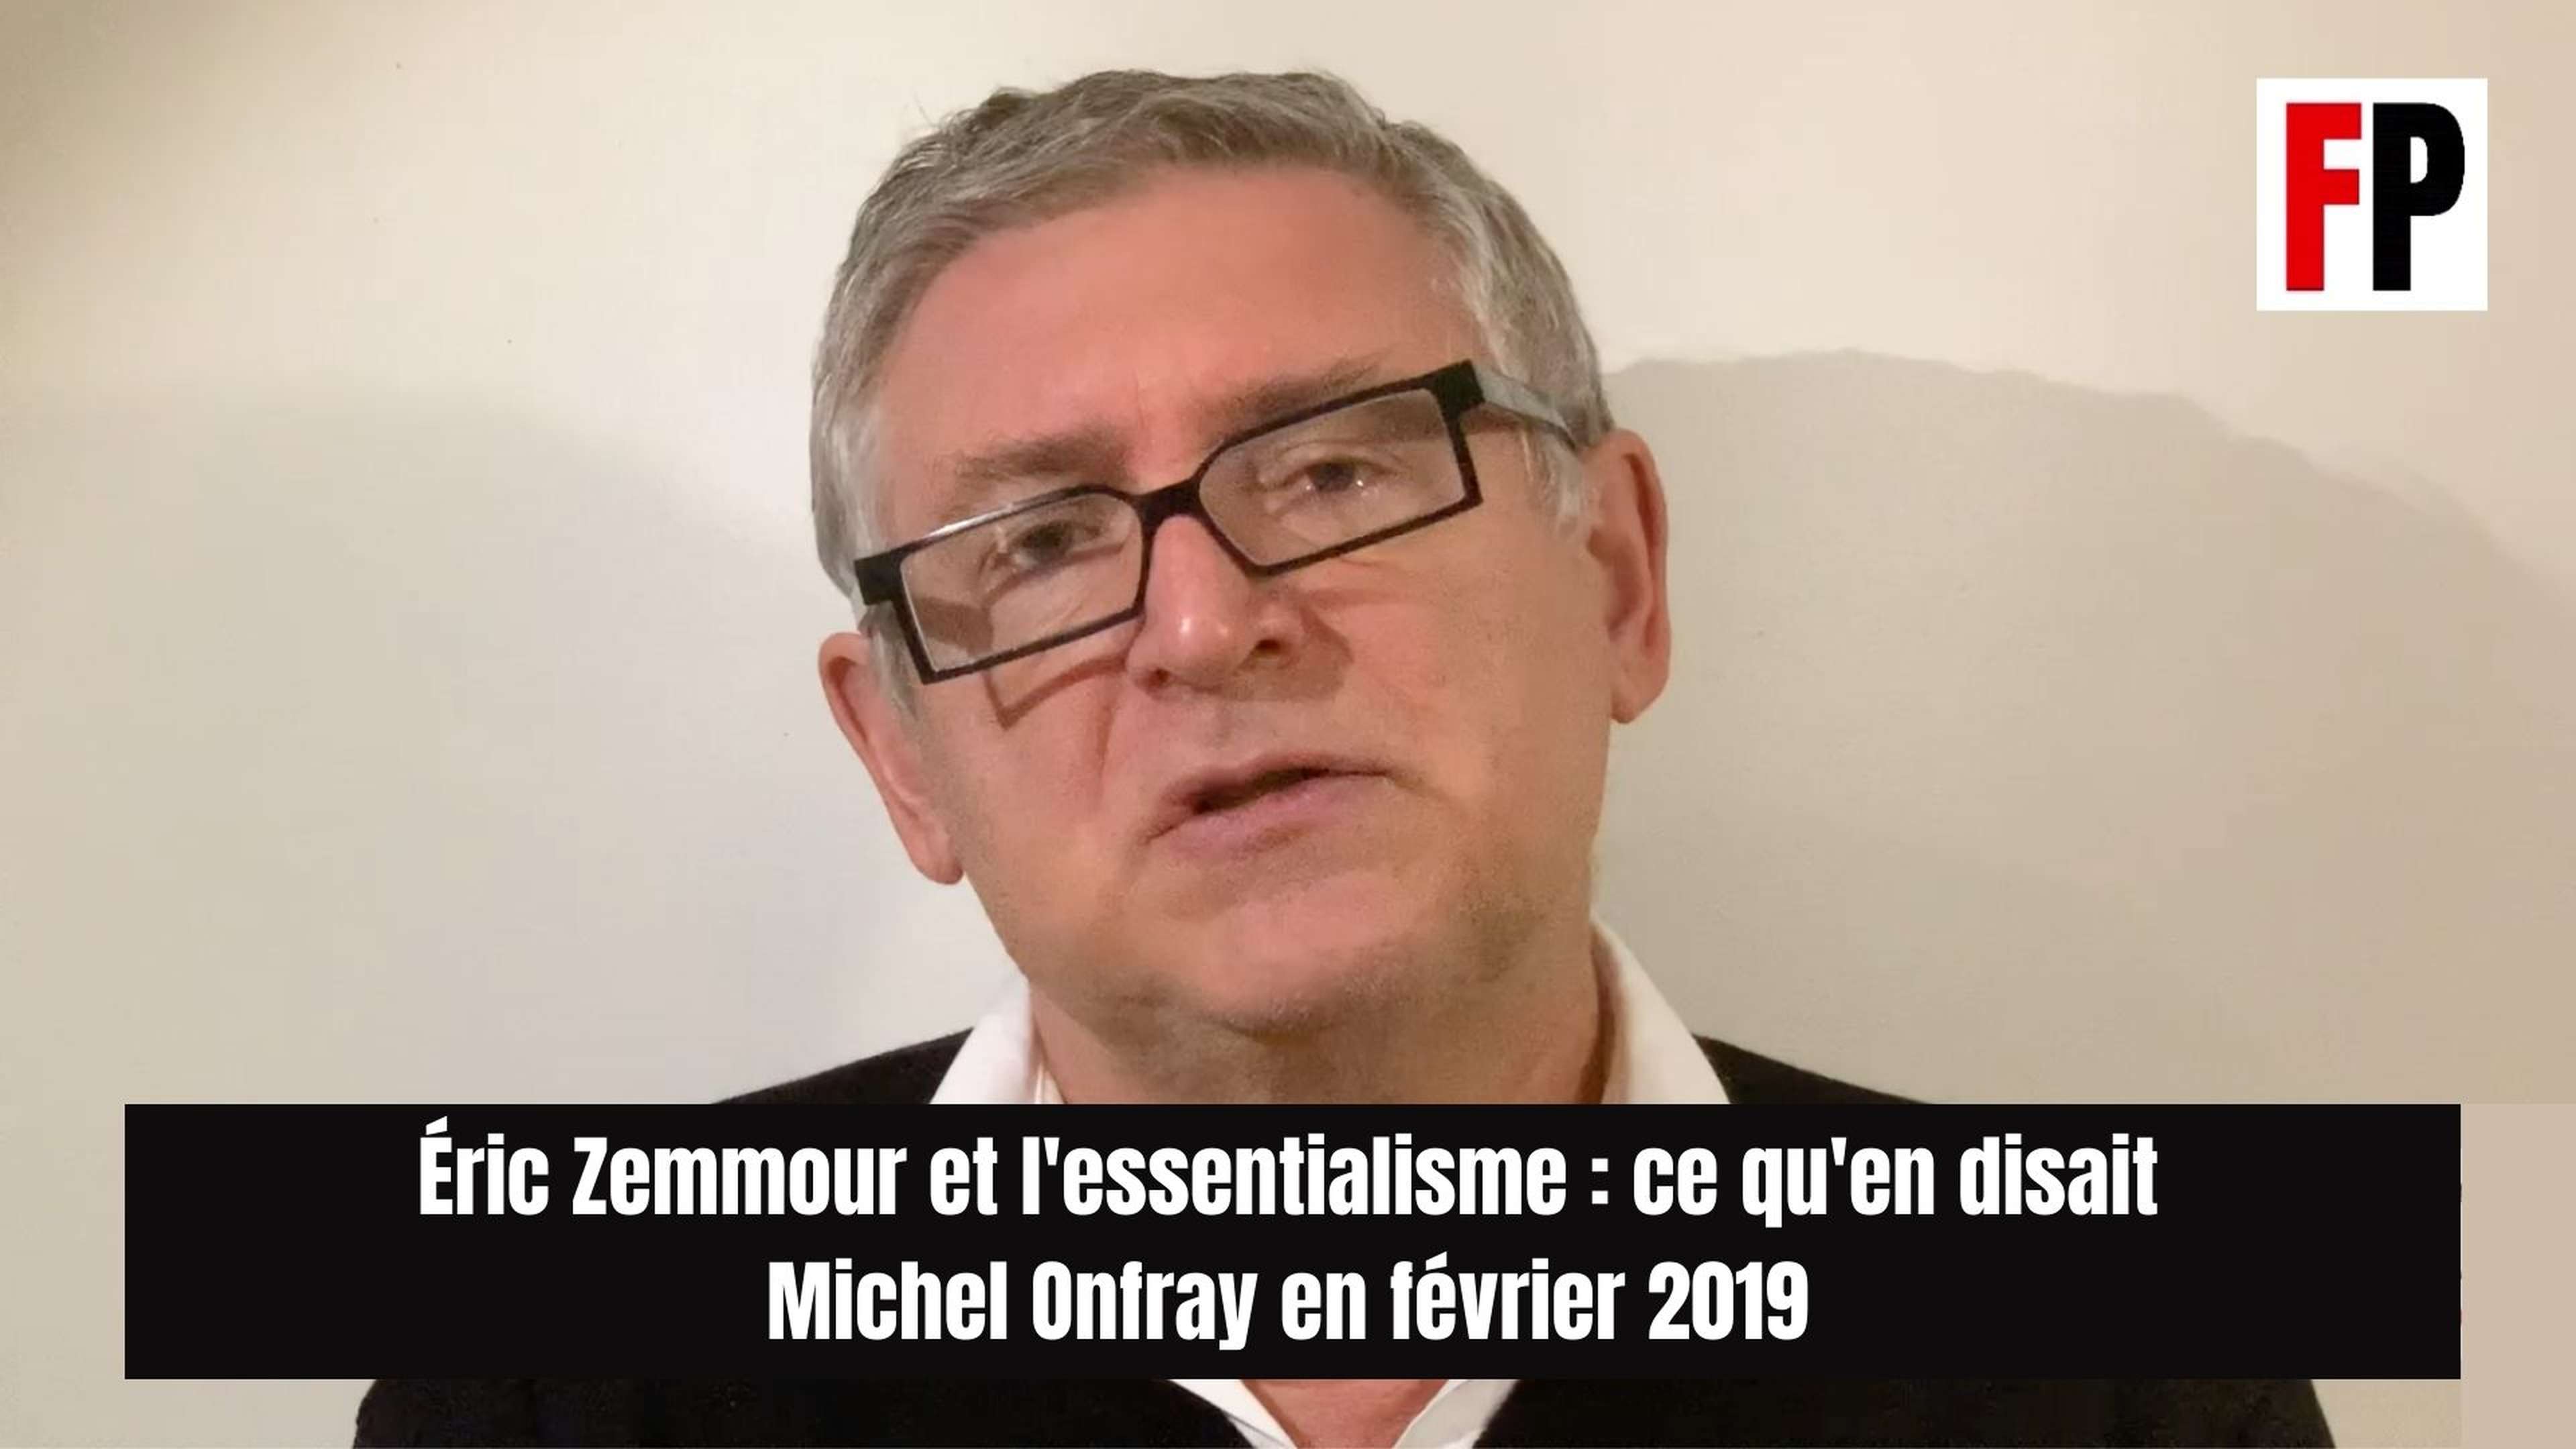 Éric Zemmour et l'essentialisme : qu'en pensait Michel Onfray en février 2019 ?